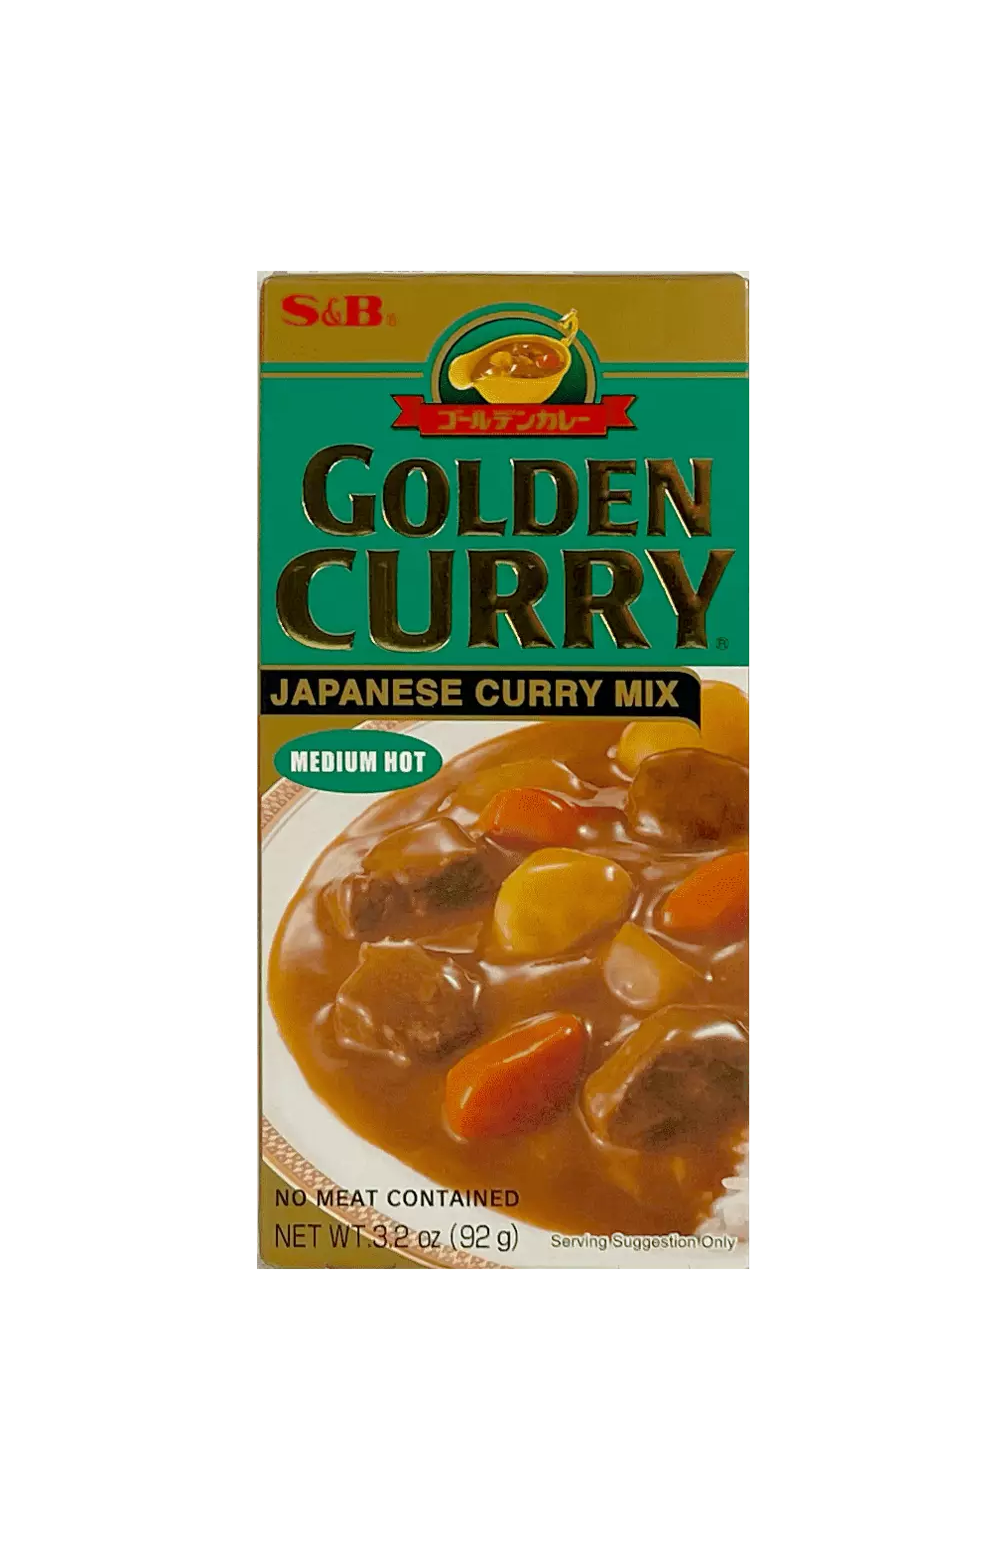 Golden Curry Medium Hot 92g S&B Japan